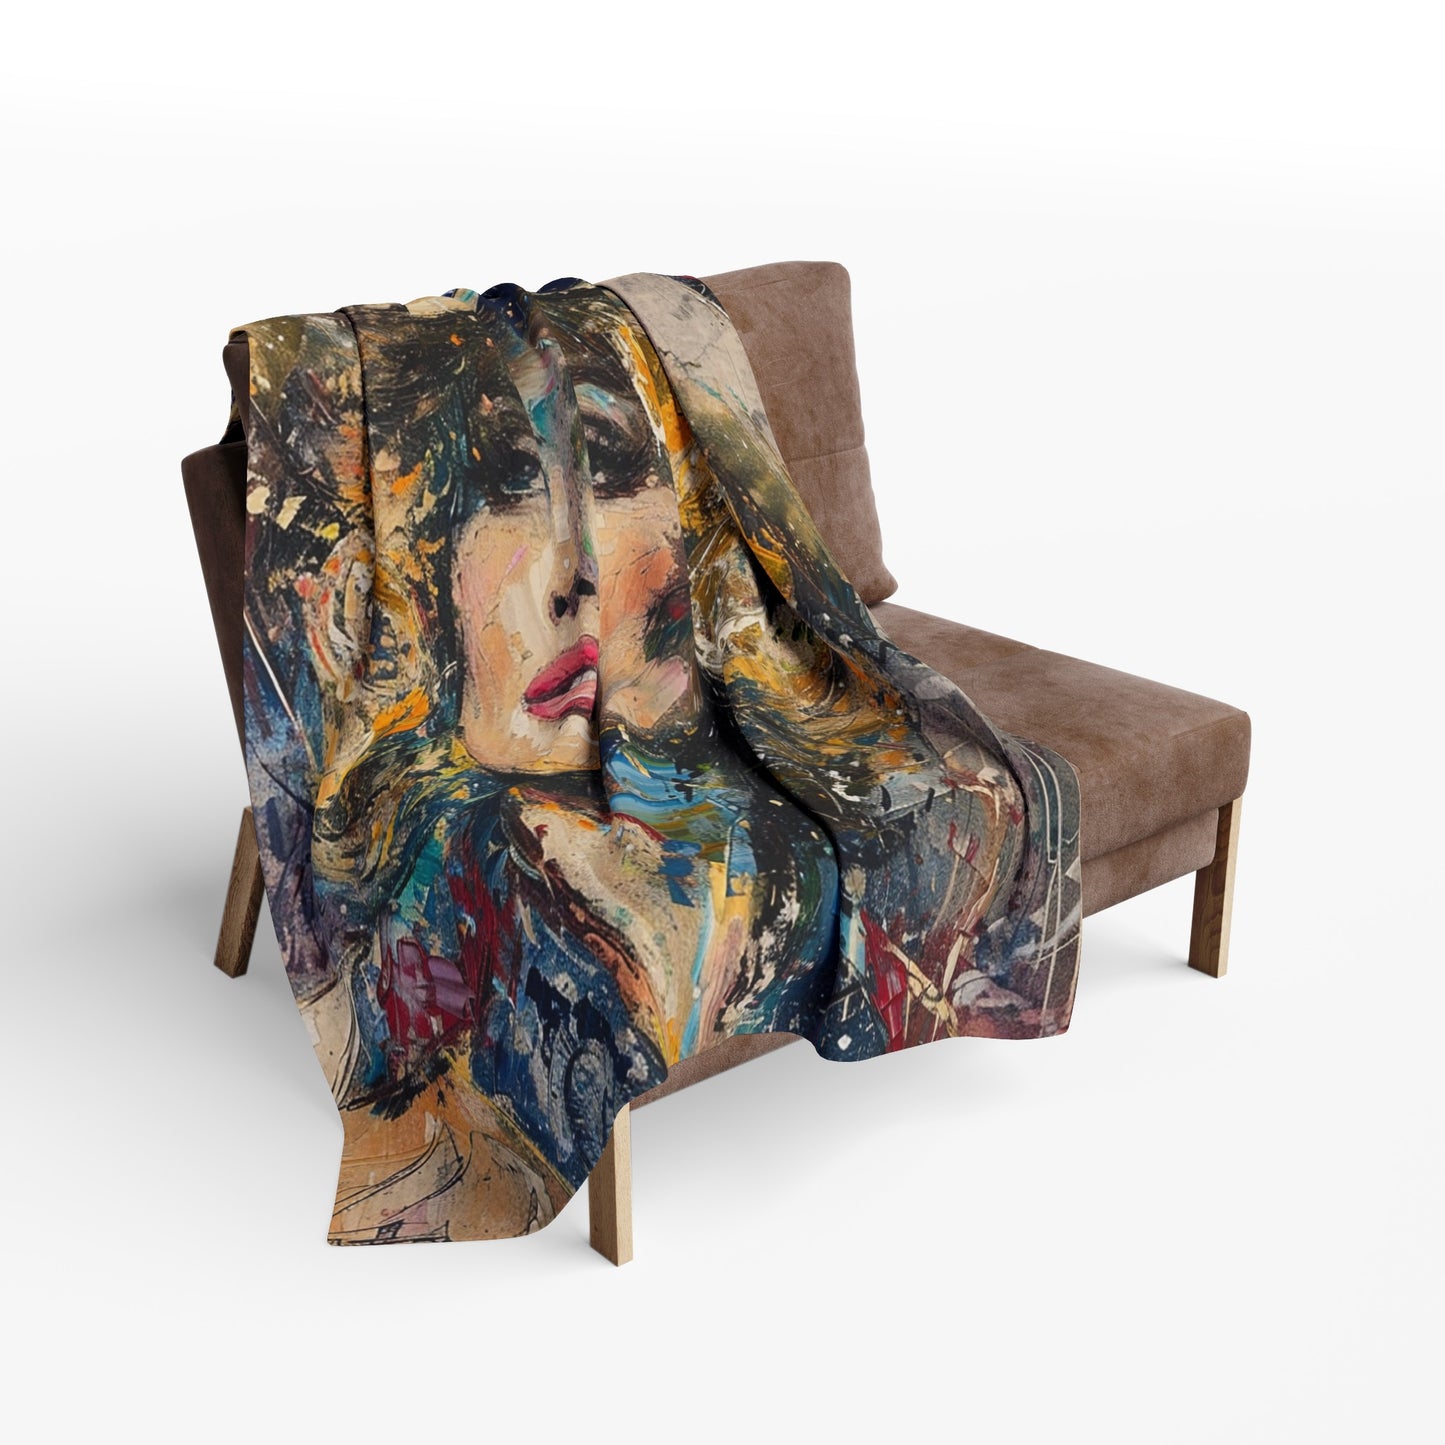 Arctic Fleece Blanket - Country Queen Western Style Blanket over chair